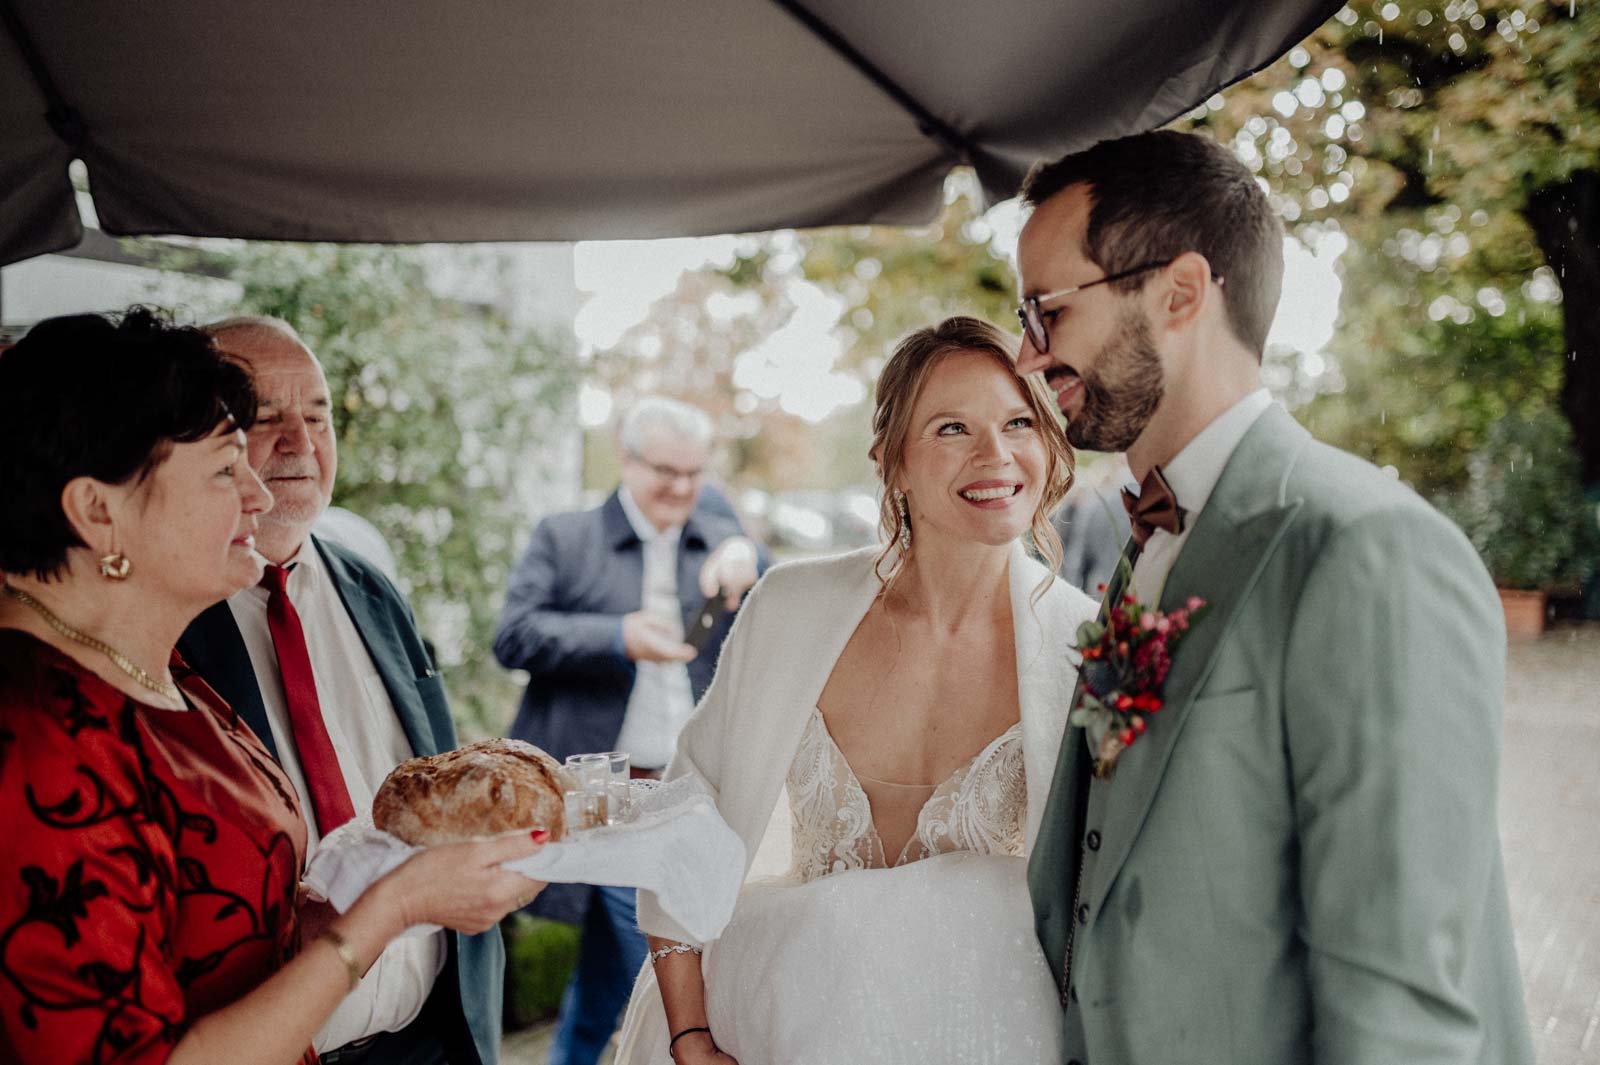 Polnischer Hochzeitsbrauch Brot und Wodka zur Hochzeit